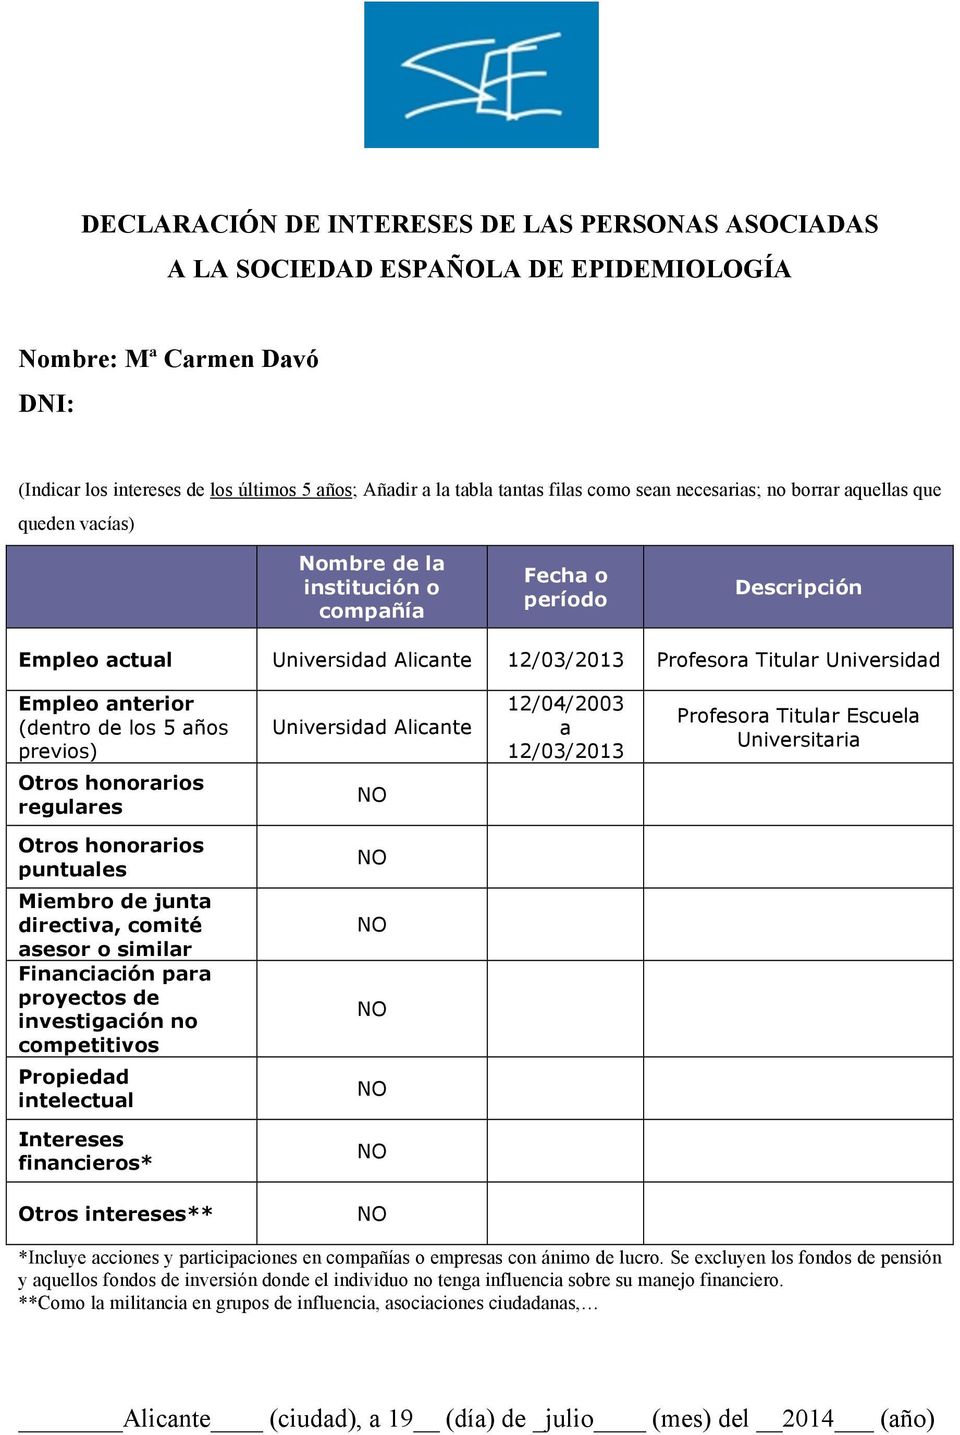 Empleo anterior (dentro de los 5 años previos) Universidad Alicante 12/04/2003 a 12/03/2013 Profesora Titular Escuela Universitaria regulares puntuales Miembro de junta directiva, comité asesor o